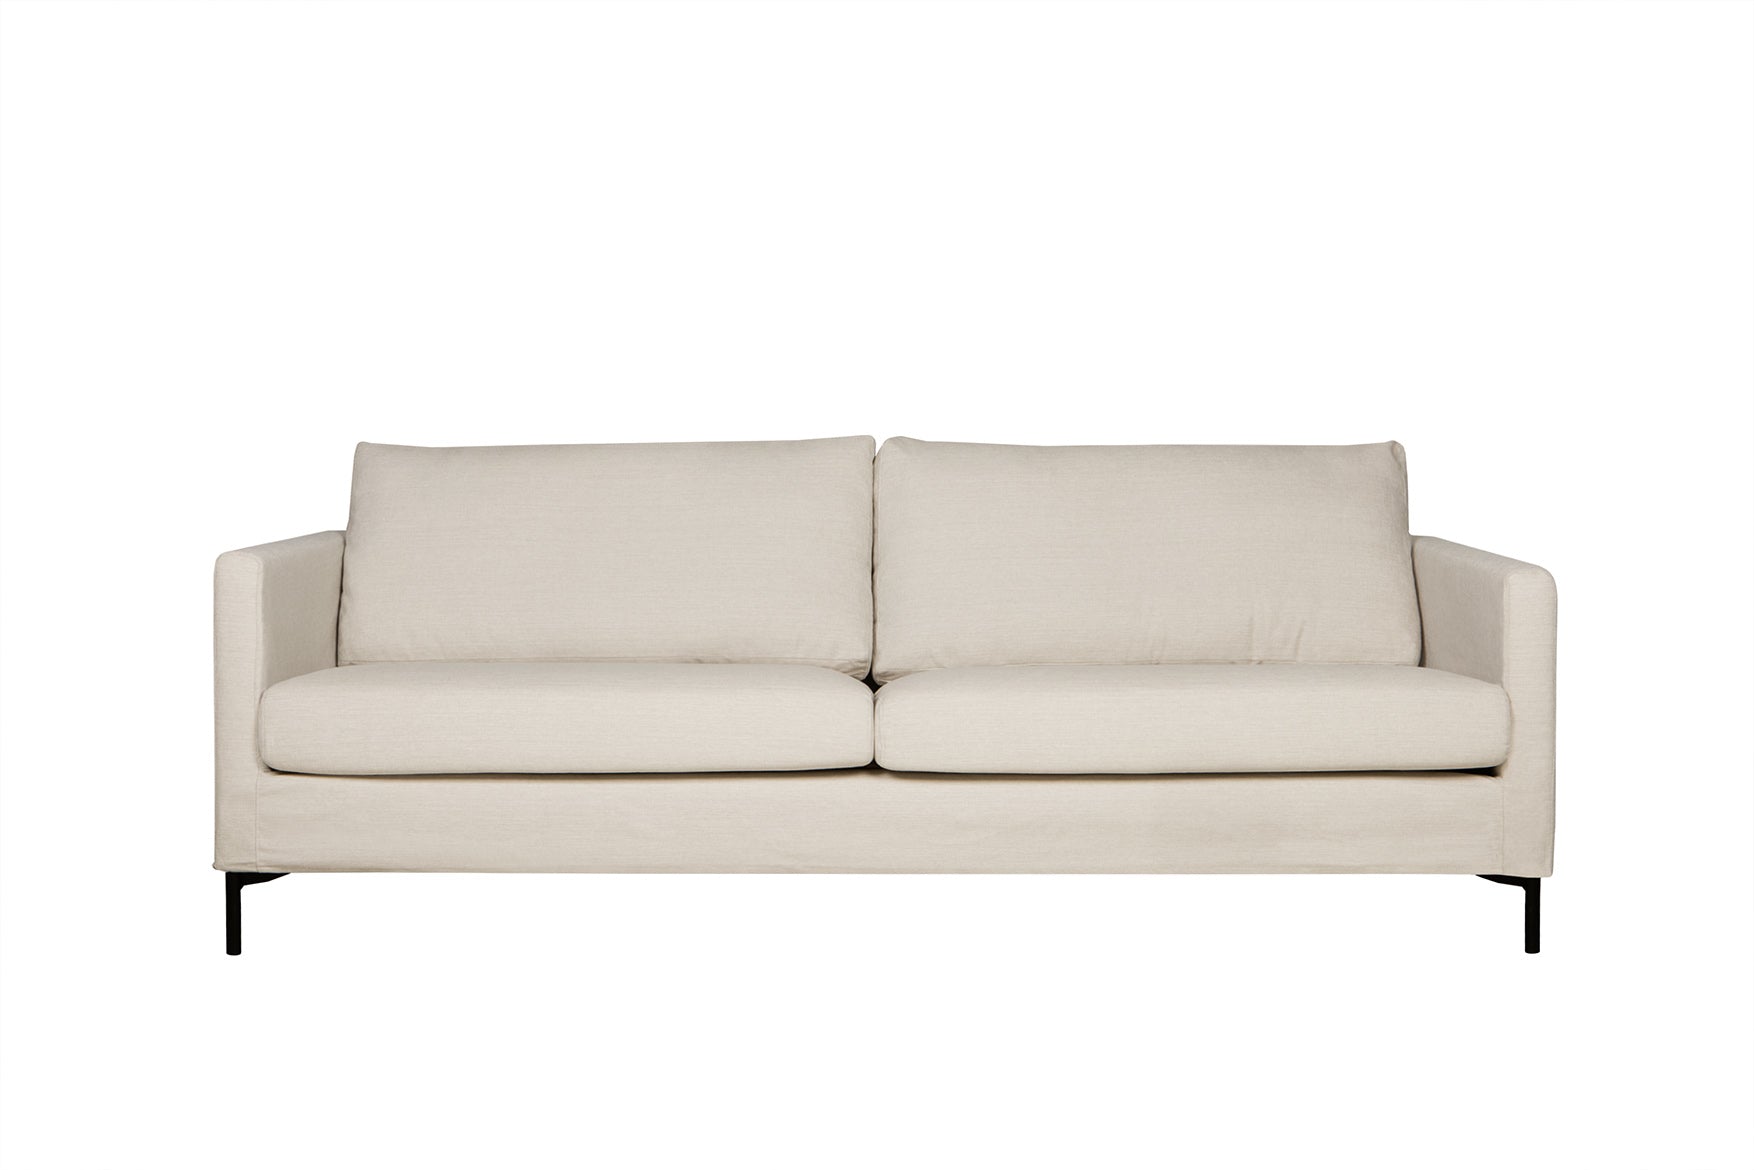 Mastrella Imilia 3 Seater Sofa